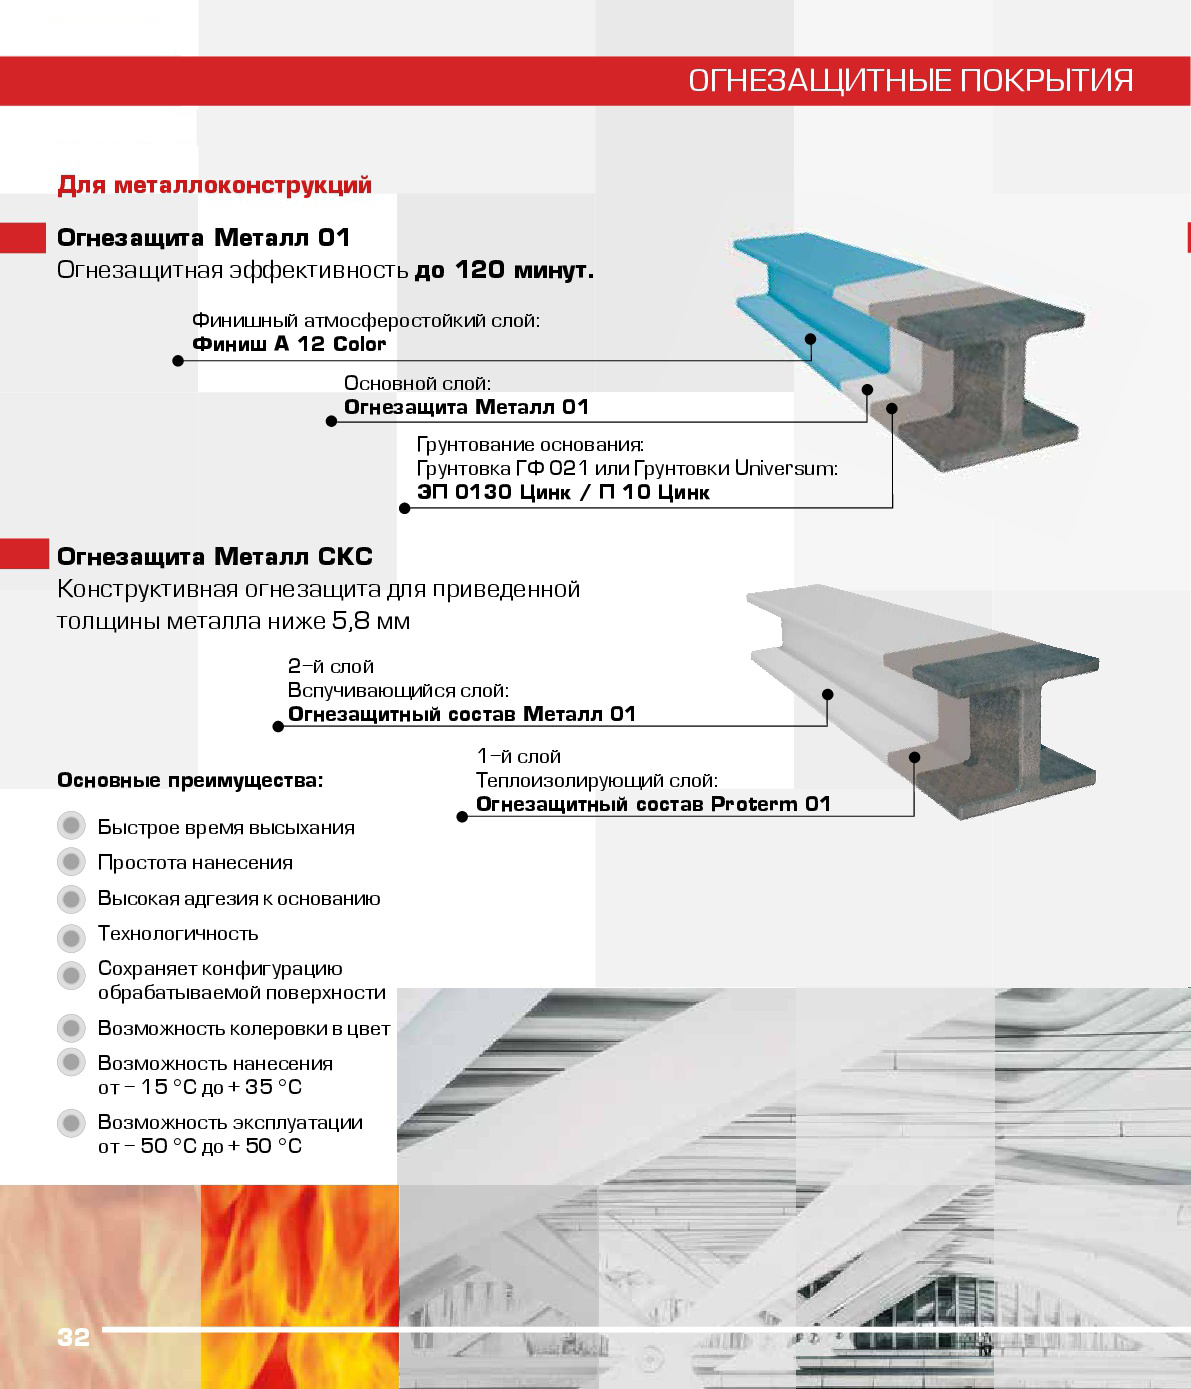 Как осуществляется огнезащита металлоконструкций?